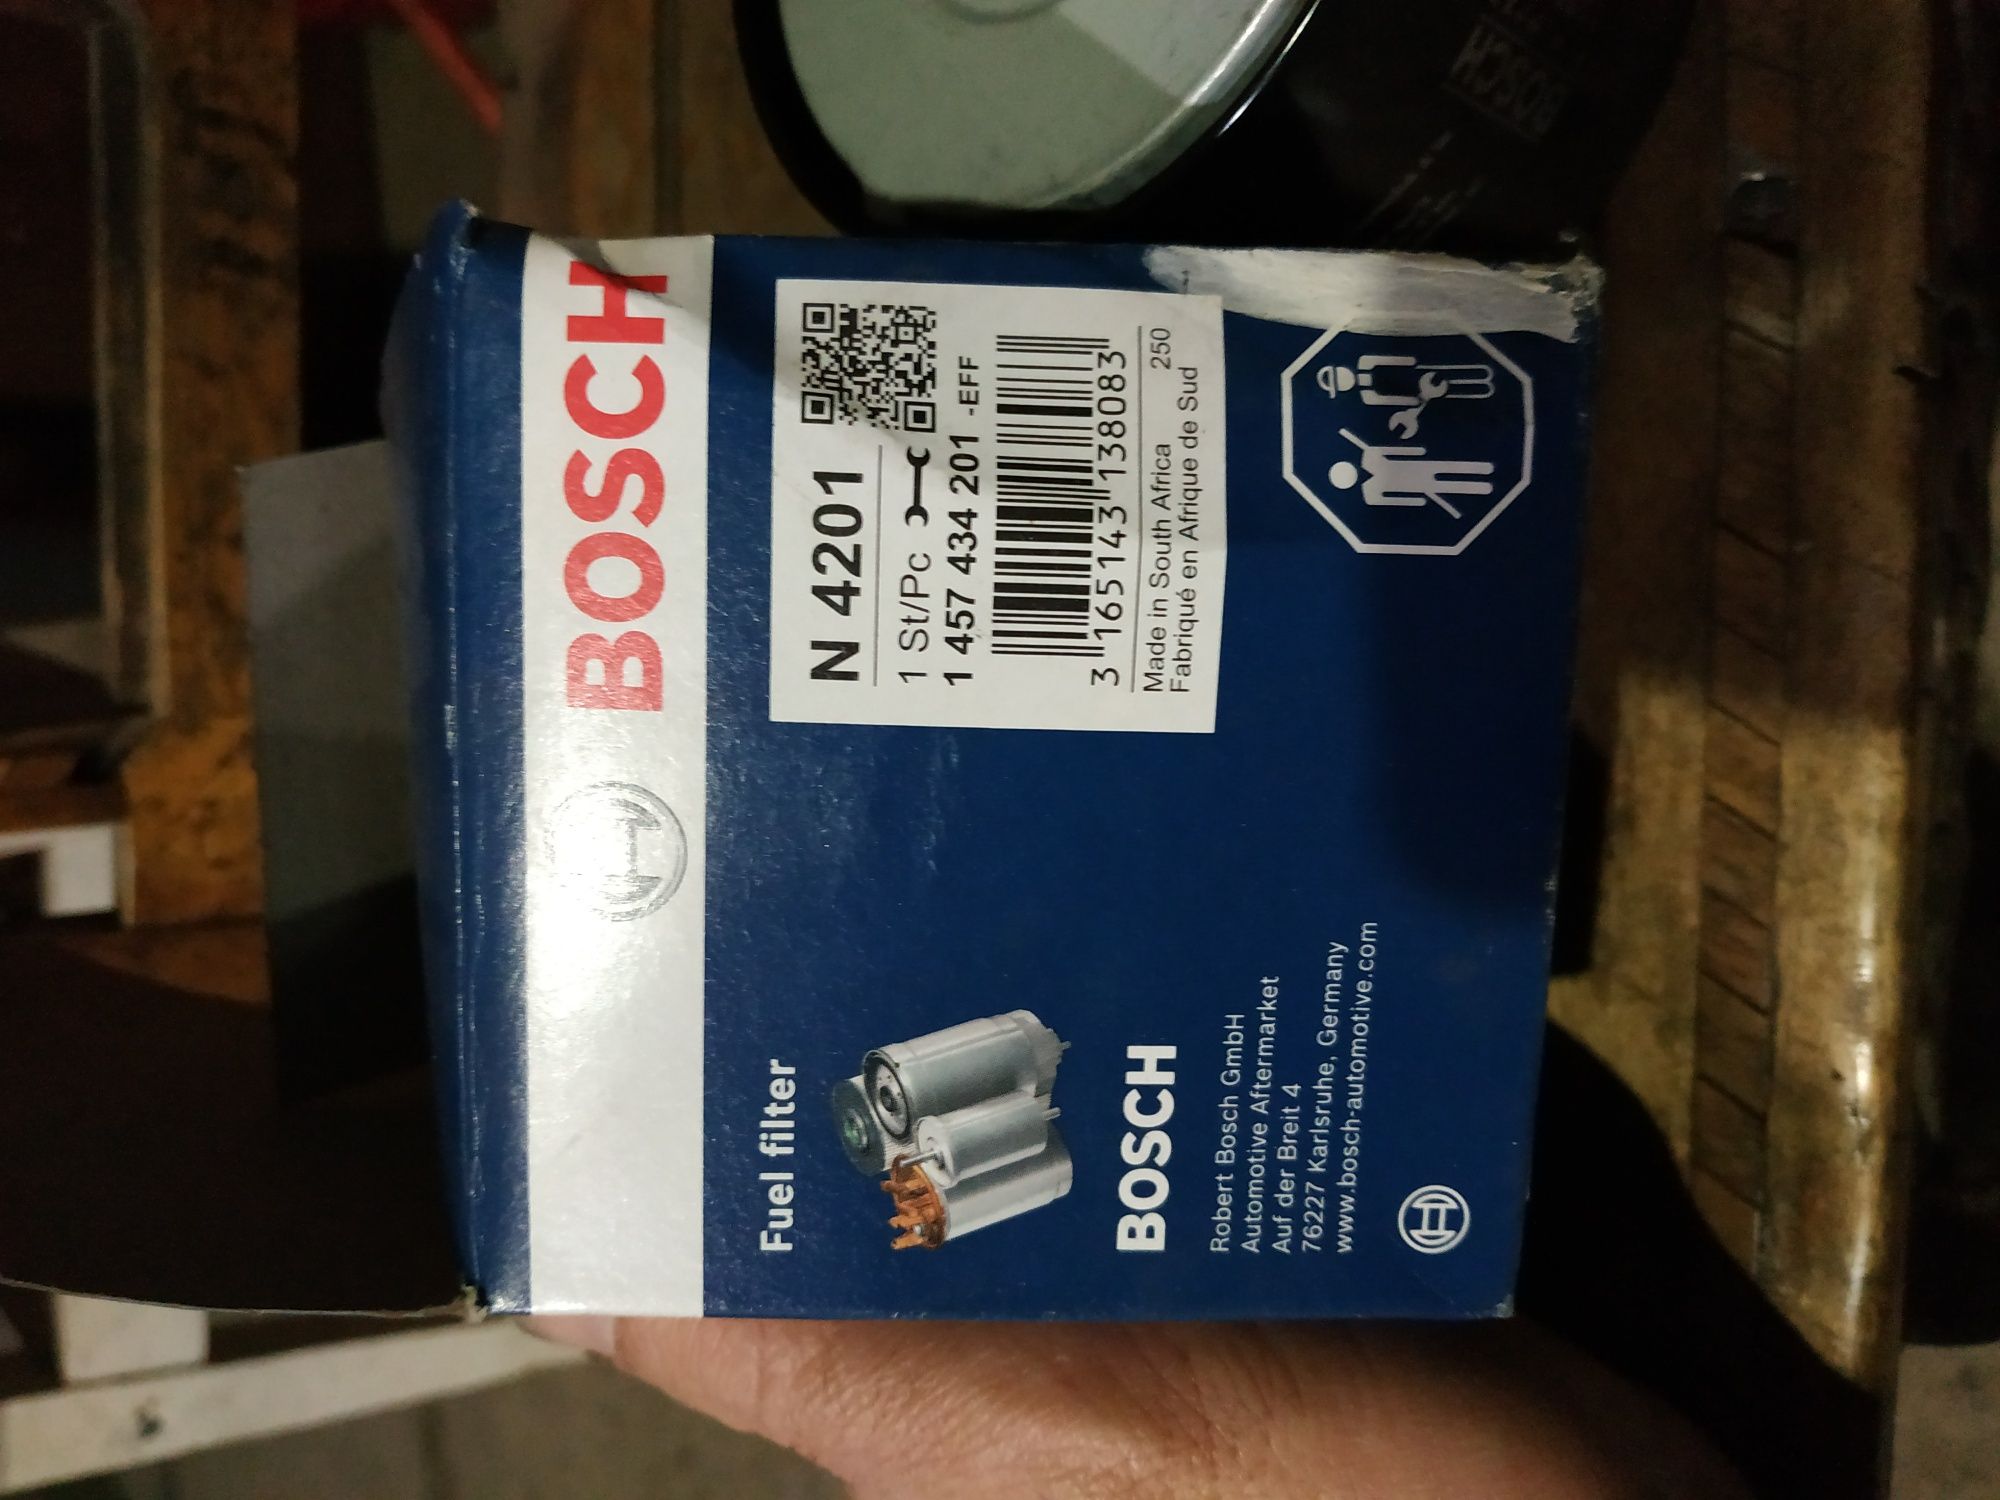 Фильтр топливный Bosch